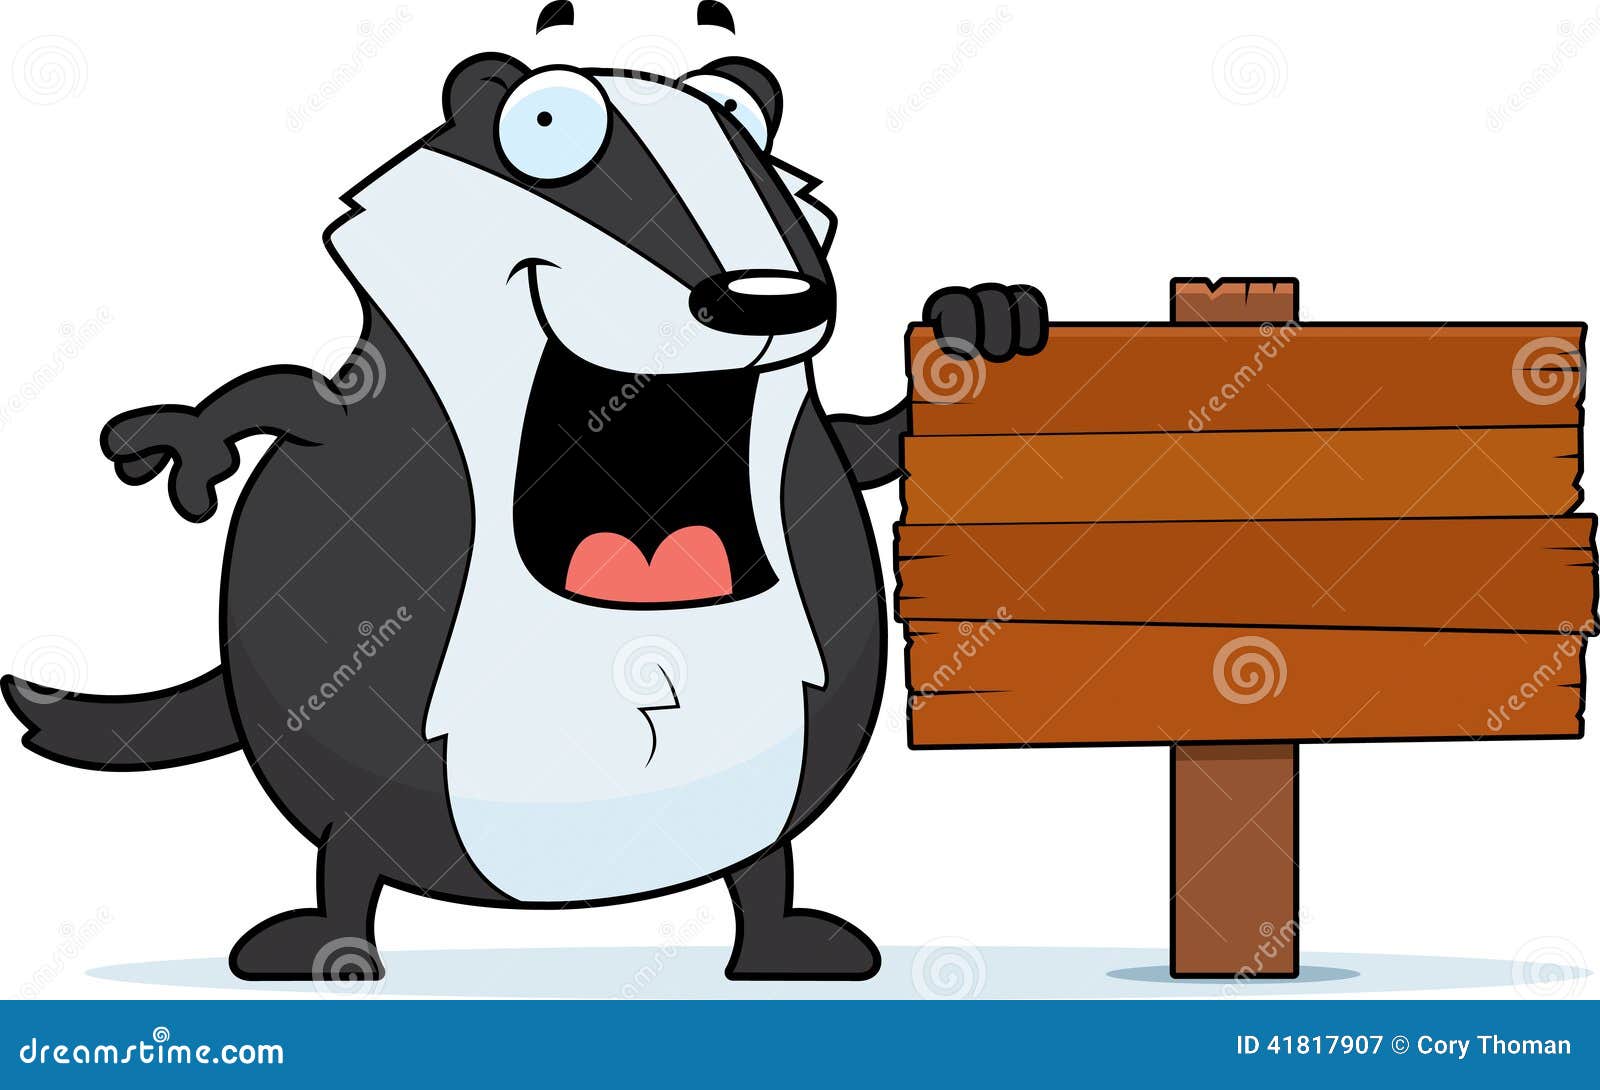 Cartoon Badger Stock Illustrations 1 573 Cartoon Badger Stock Illustrations Vectors Clipart Dreamstime